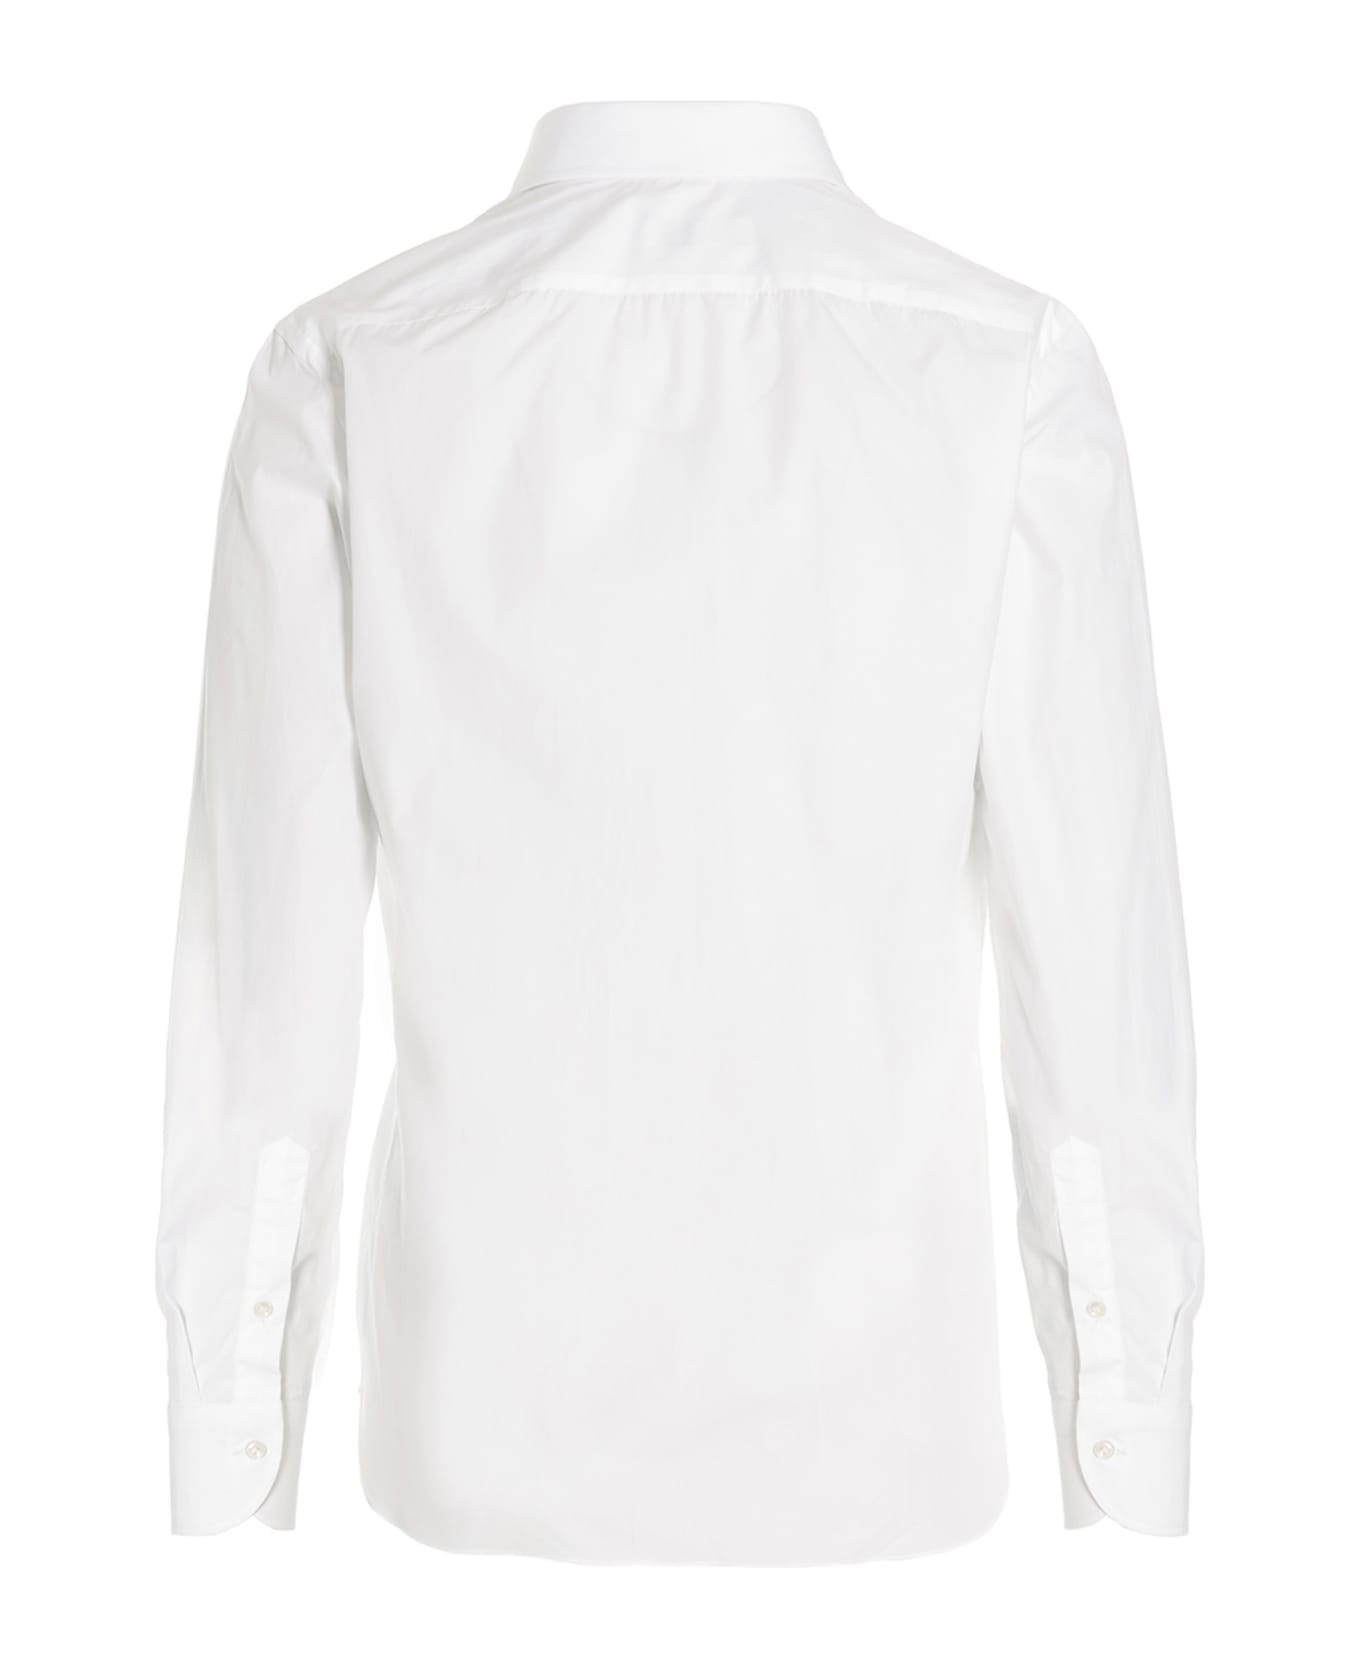 Borriello Napoli 'marechiaro' Shirt - White シャツ